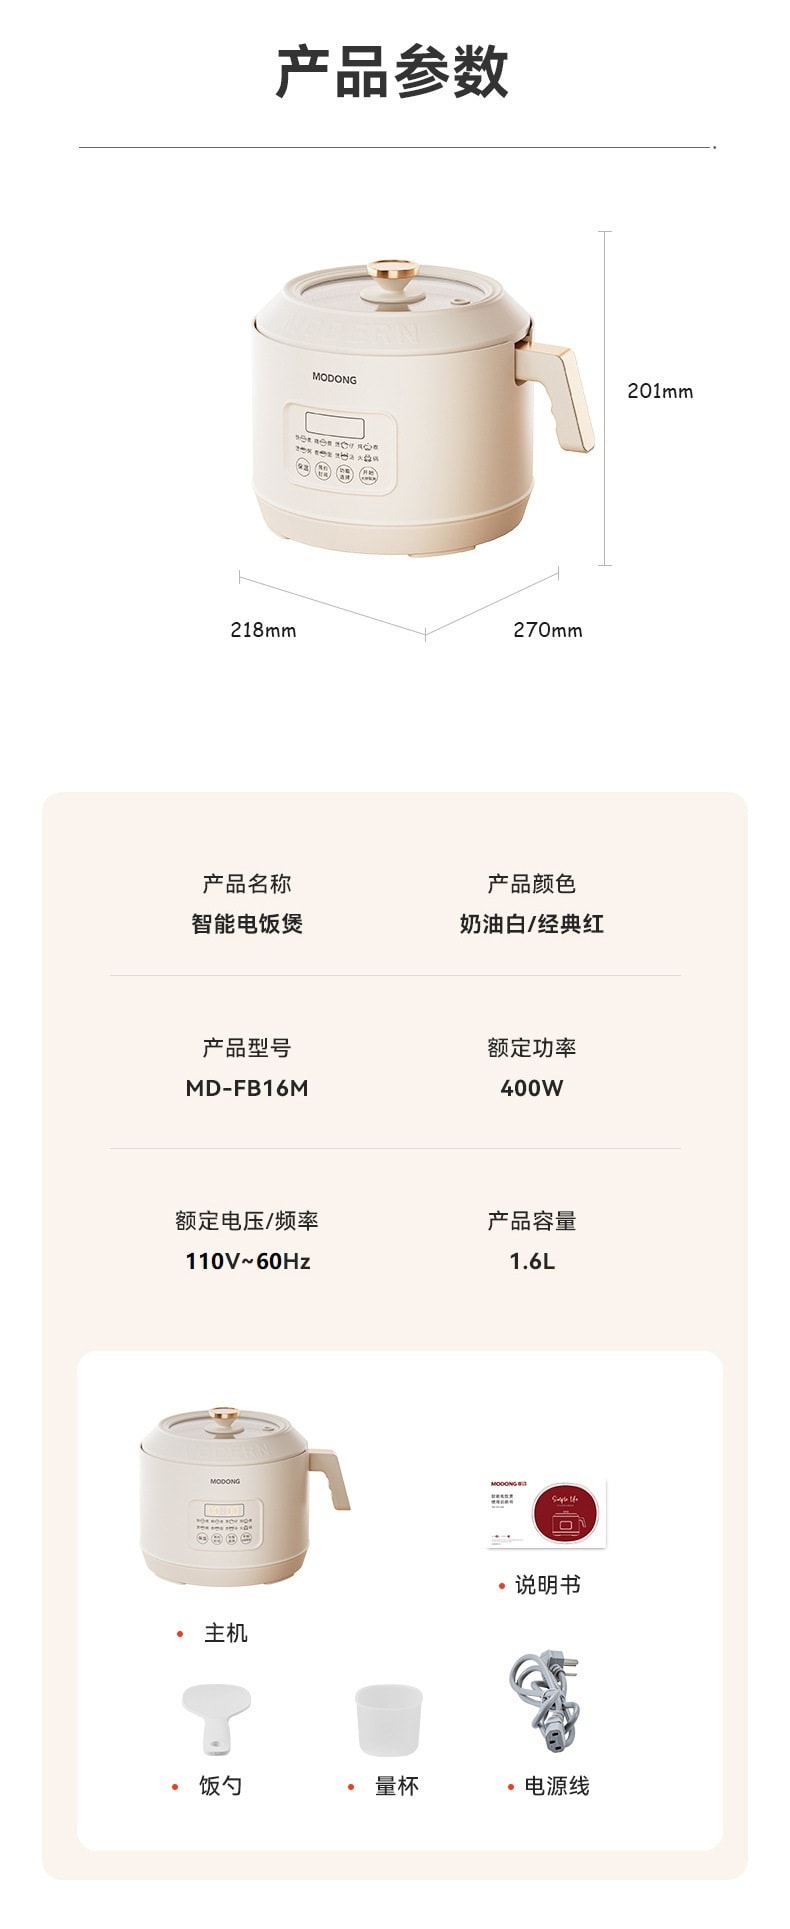 中国MODONG 多功能分体式智能电饭煲 迷你电炖锅 1.6L容量 白色 1件入